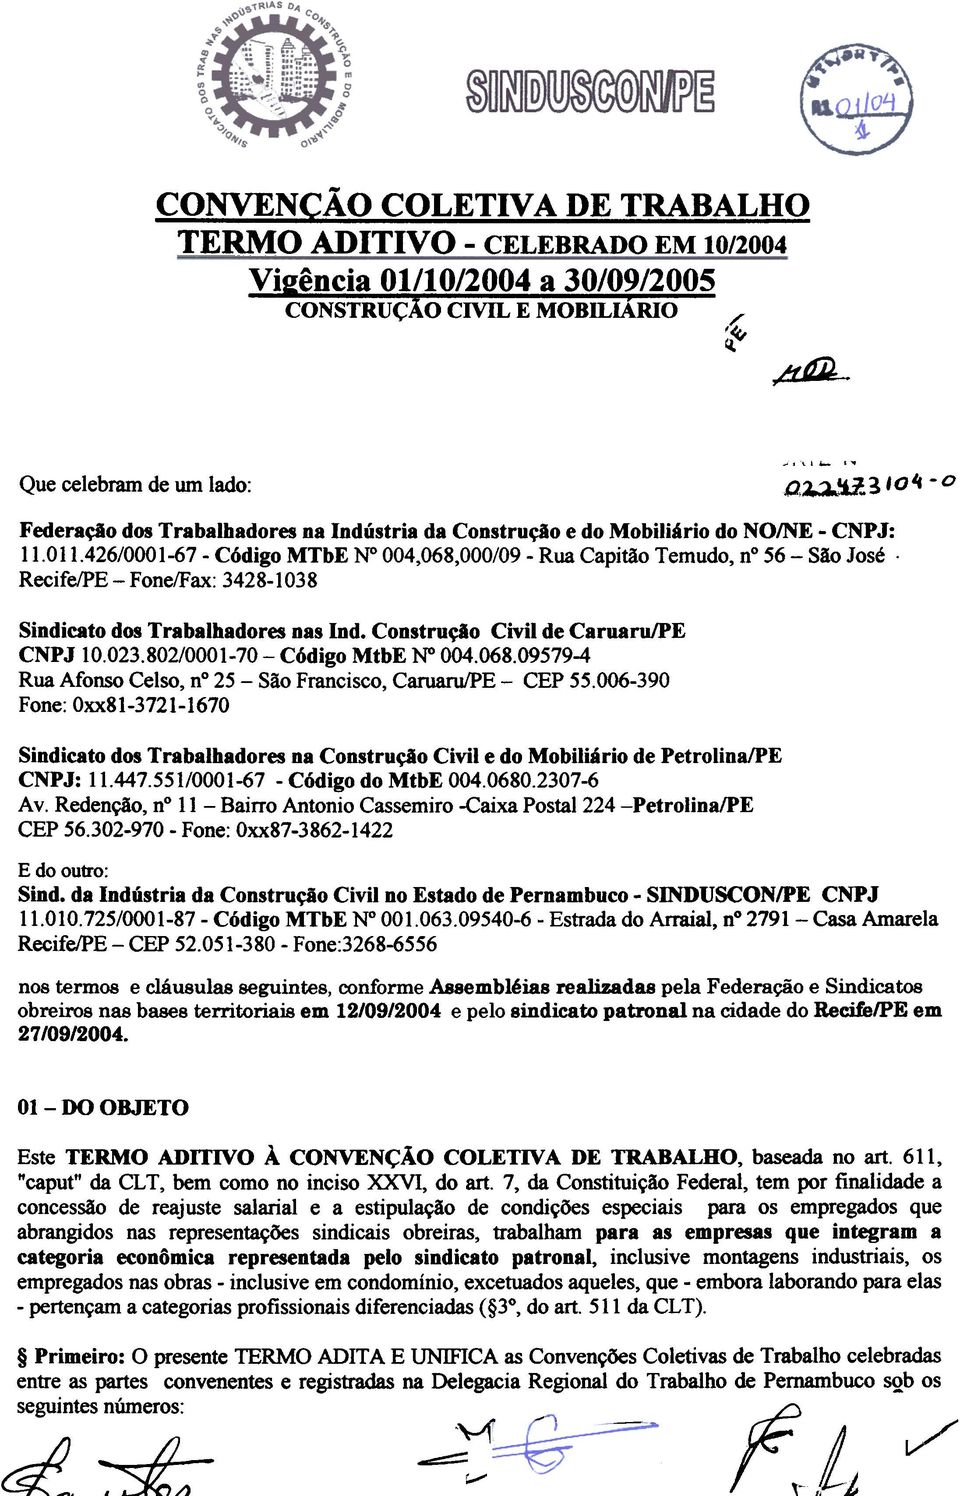 Recife/PE - Fone/Fax: 3428-1038 Sindicato dos Trabalhadores nas Ind. Construção Civil de Caruaru/PE CNPJ 10.023.802/0001-70 - Código MtbE 004.068.